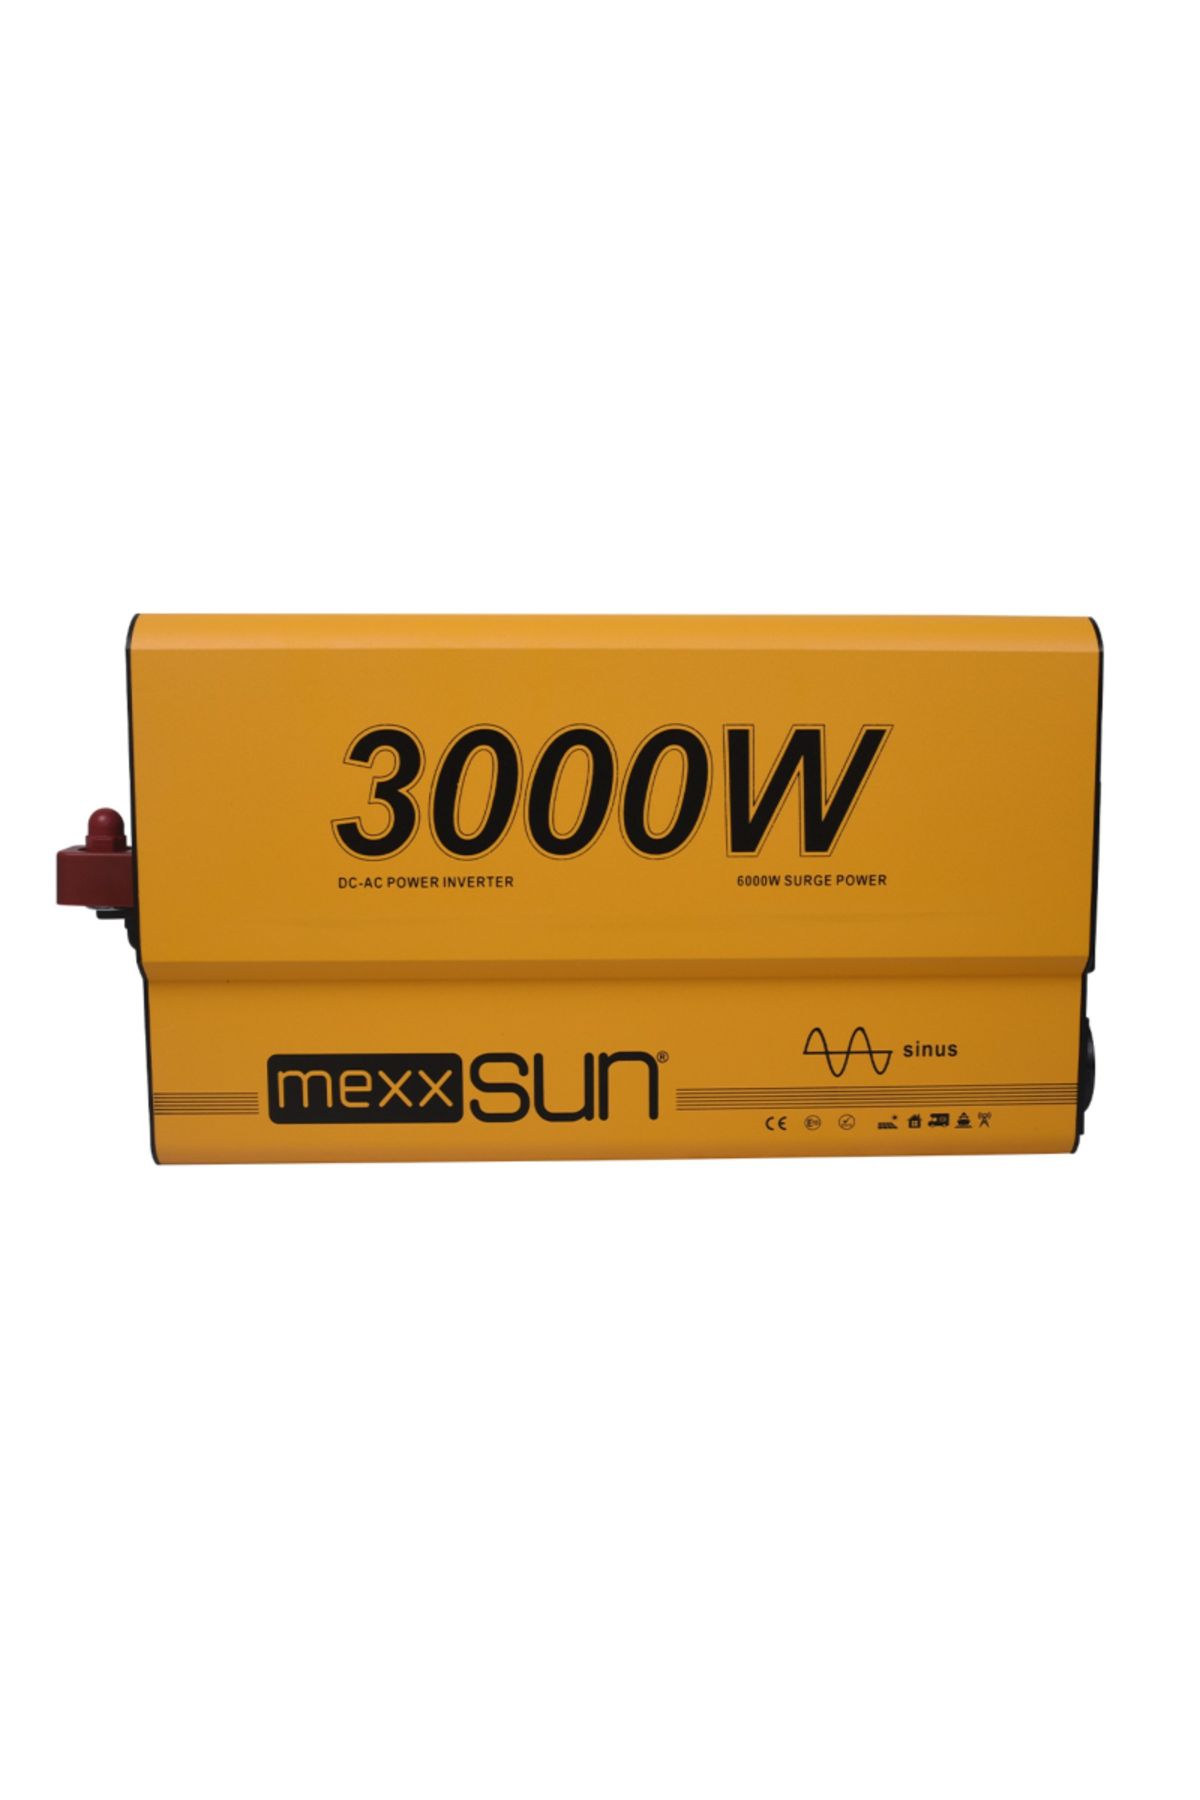 MEXXSUN Tam Sinus 12v 3000w Inverter